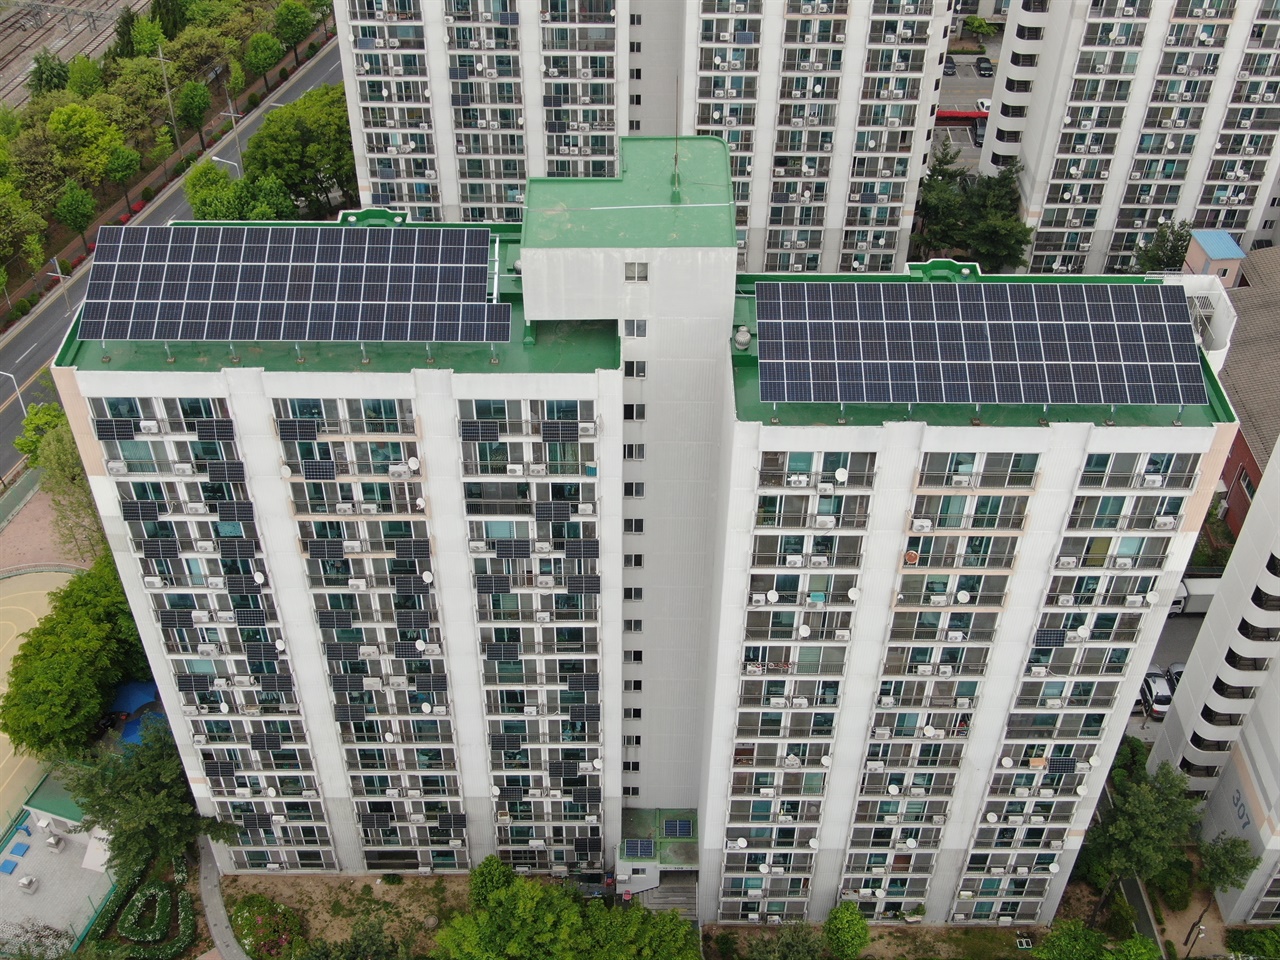 법동주공아파트 옥상에 50kW 자가용 태양광과 베란다형 미니태양광이 설치 된 모습